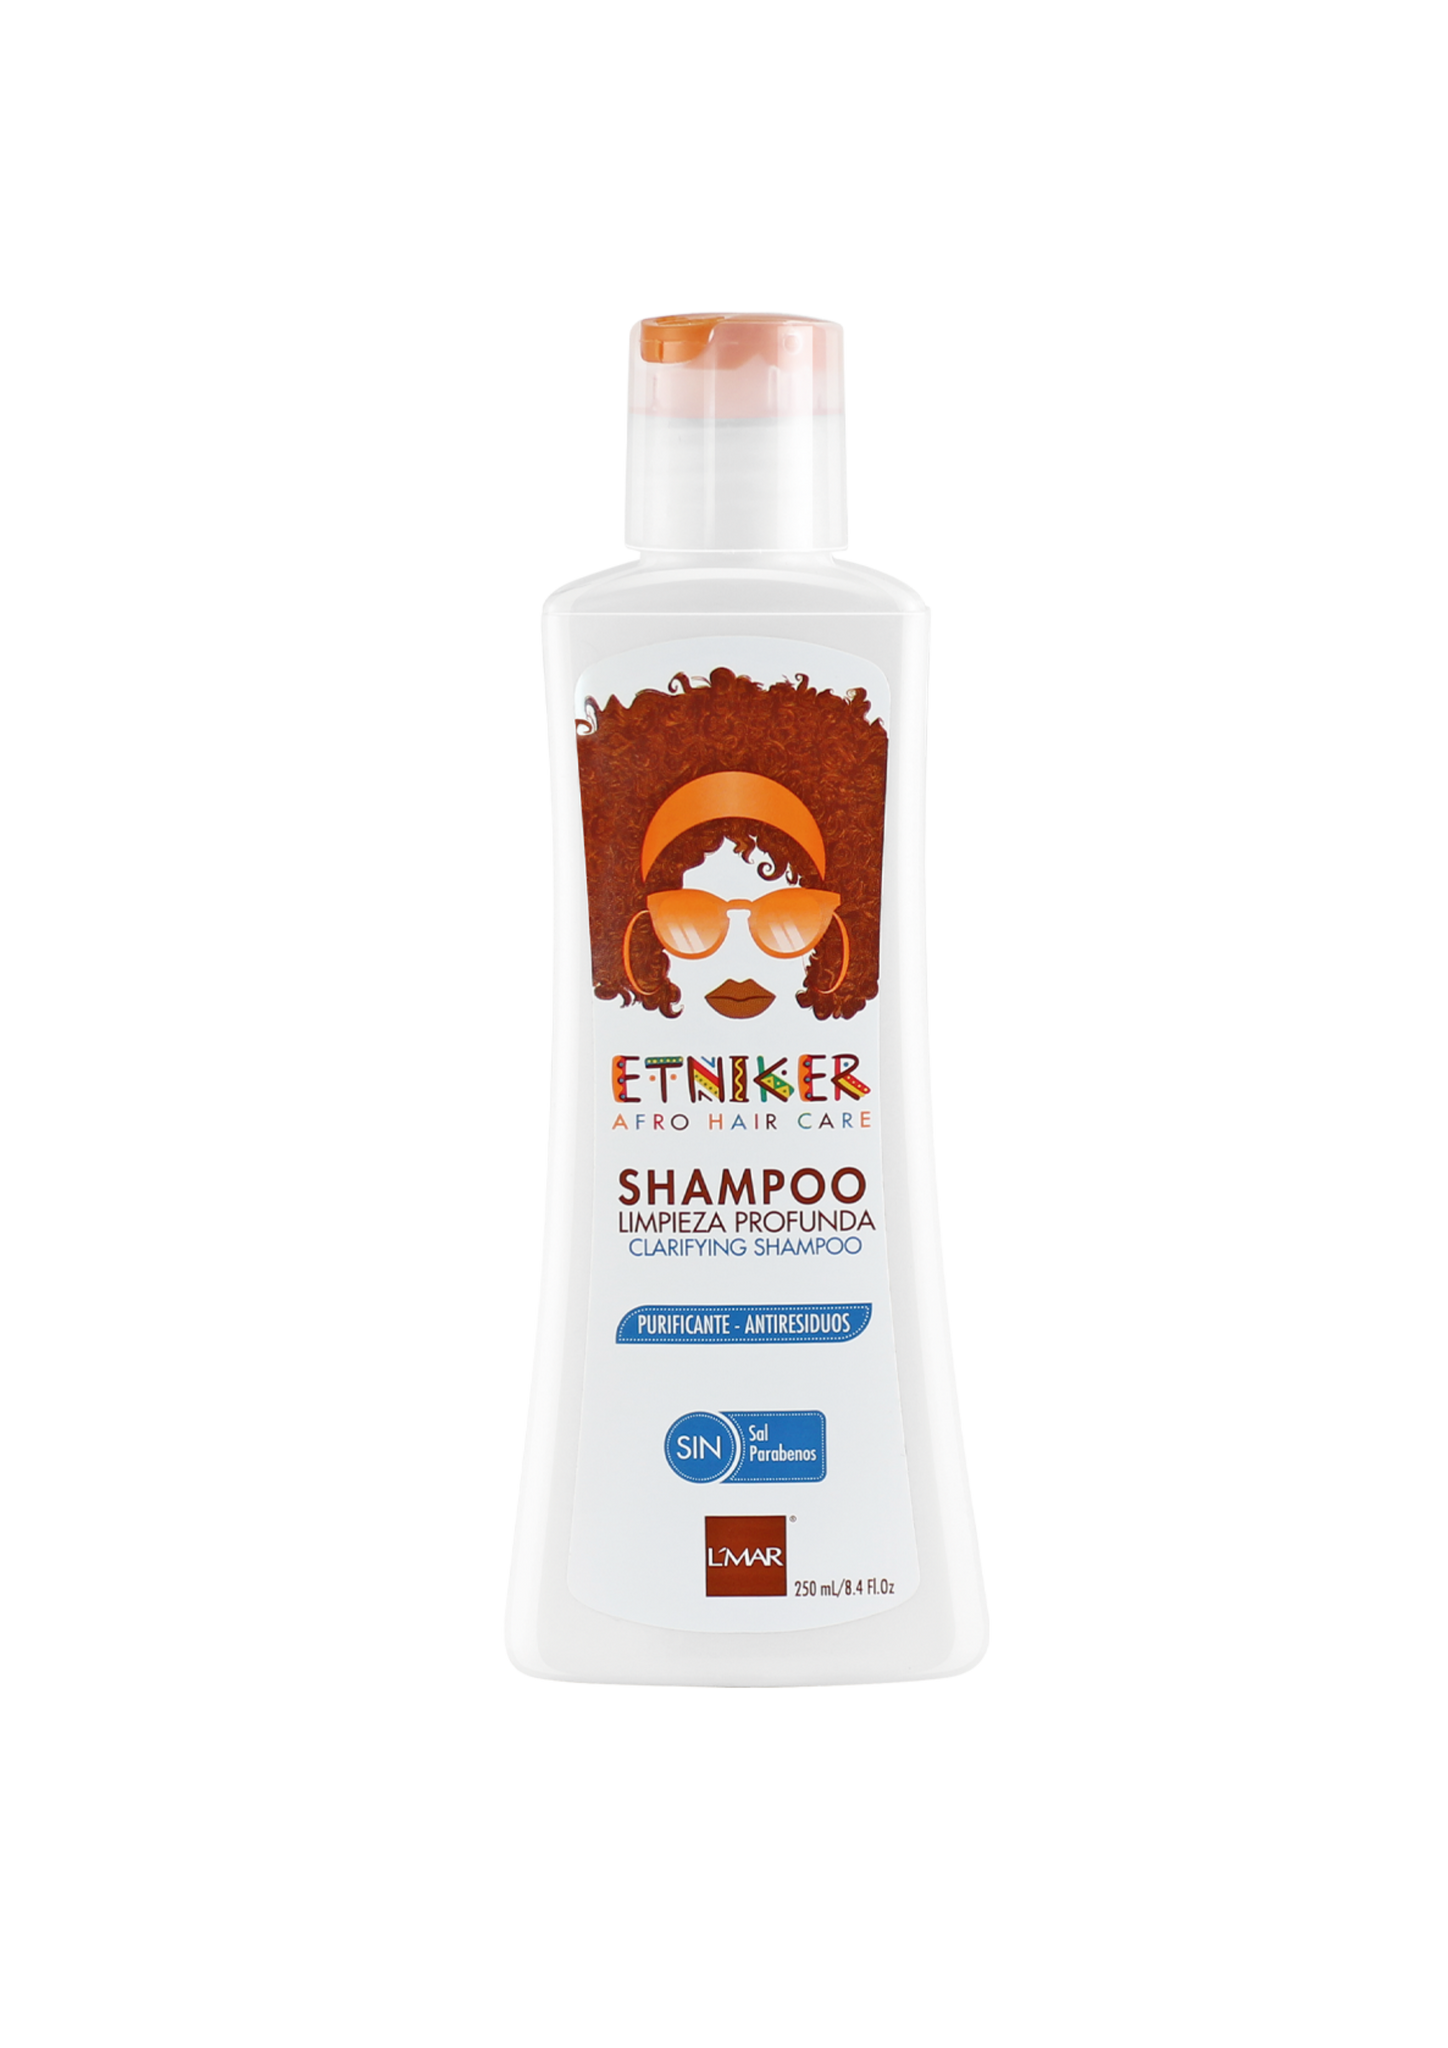 Shampoo Etniker de limpieza profunda 250ml Tu cabello quedará listo para recibir todos los nutrientes de los tratamientos que apliques luego de lavar con este shampoo, es como reiniciar tu cabello.  Contiene sulfatos. No parabenos No contiene siliconas